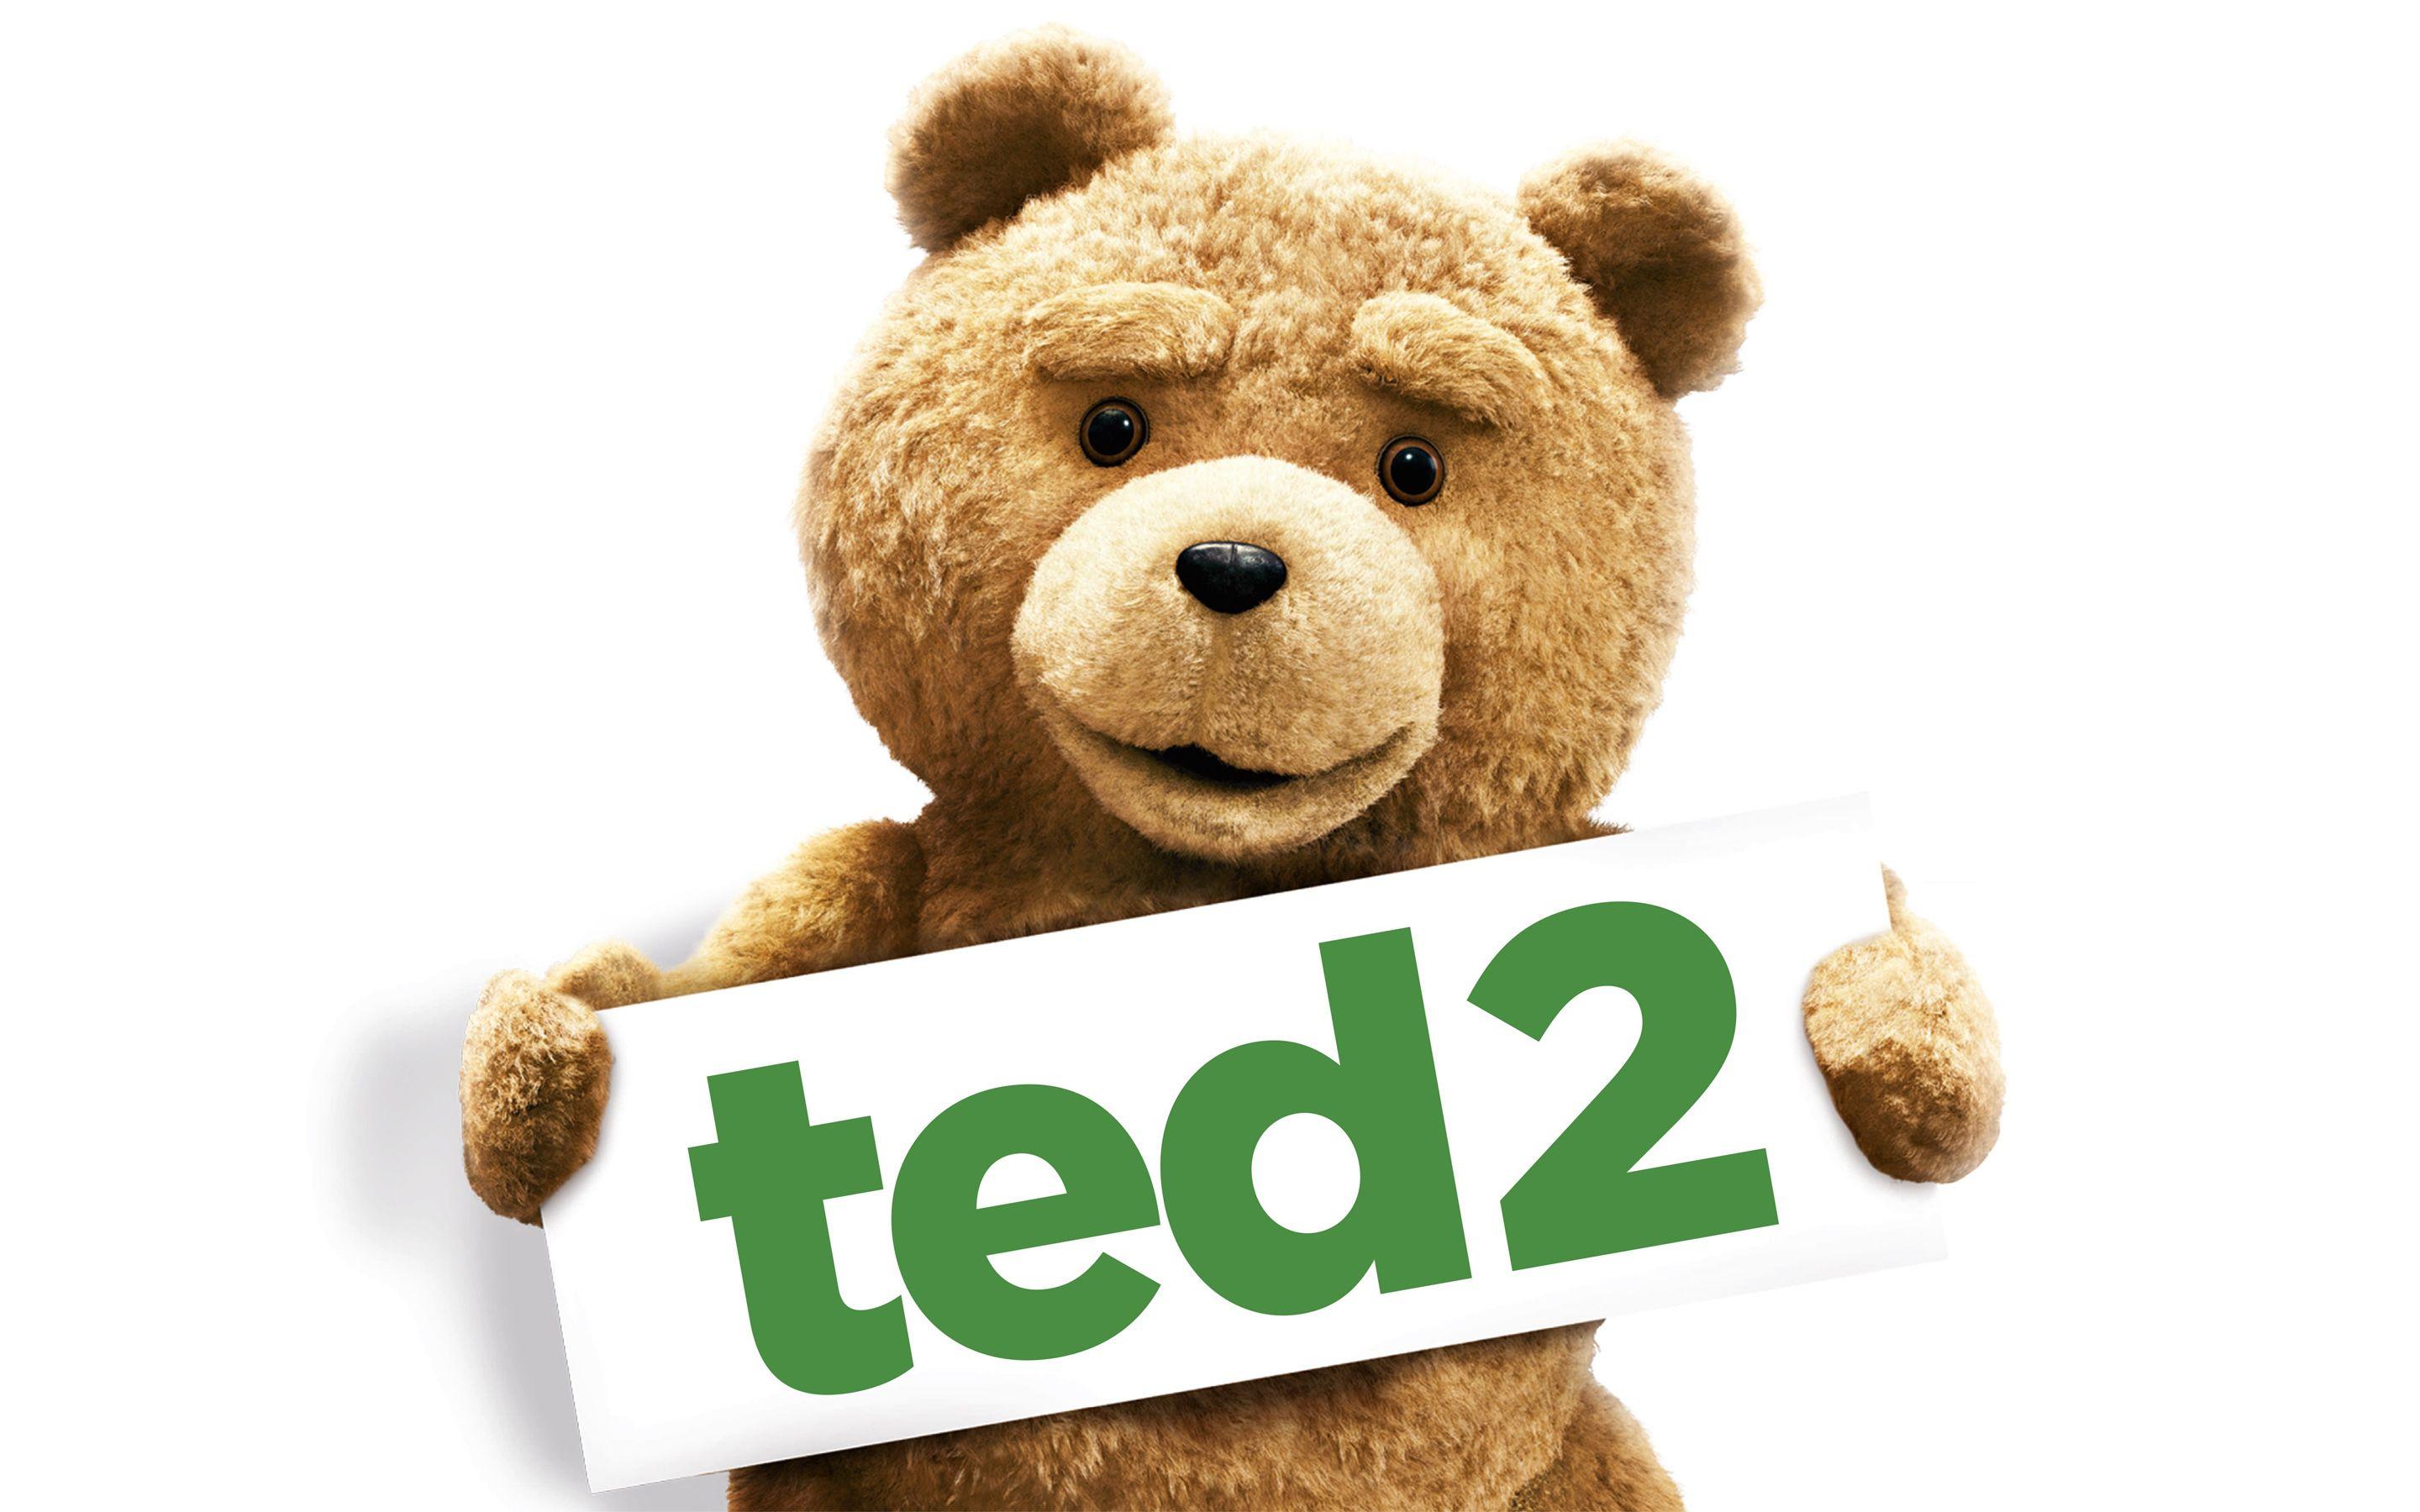 Movies Ted Movie wallpaper (Desktop, Phone, Tablet)